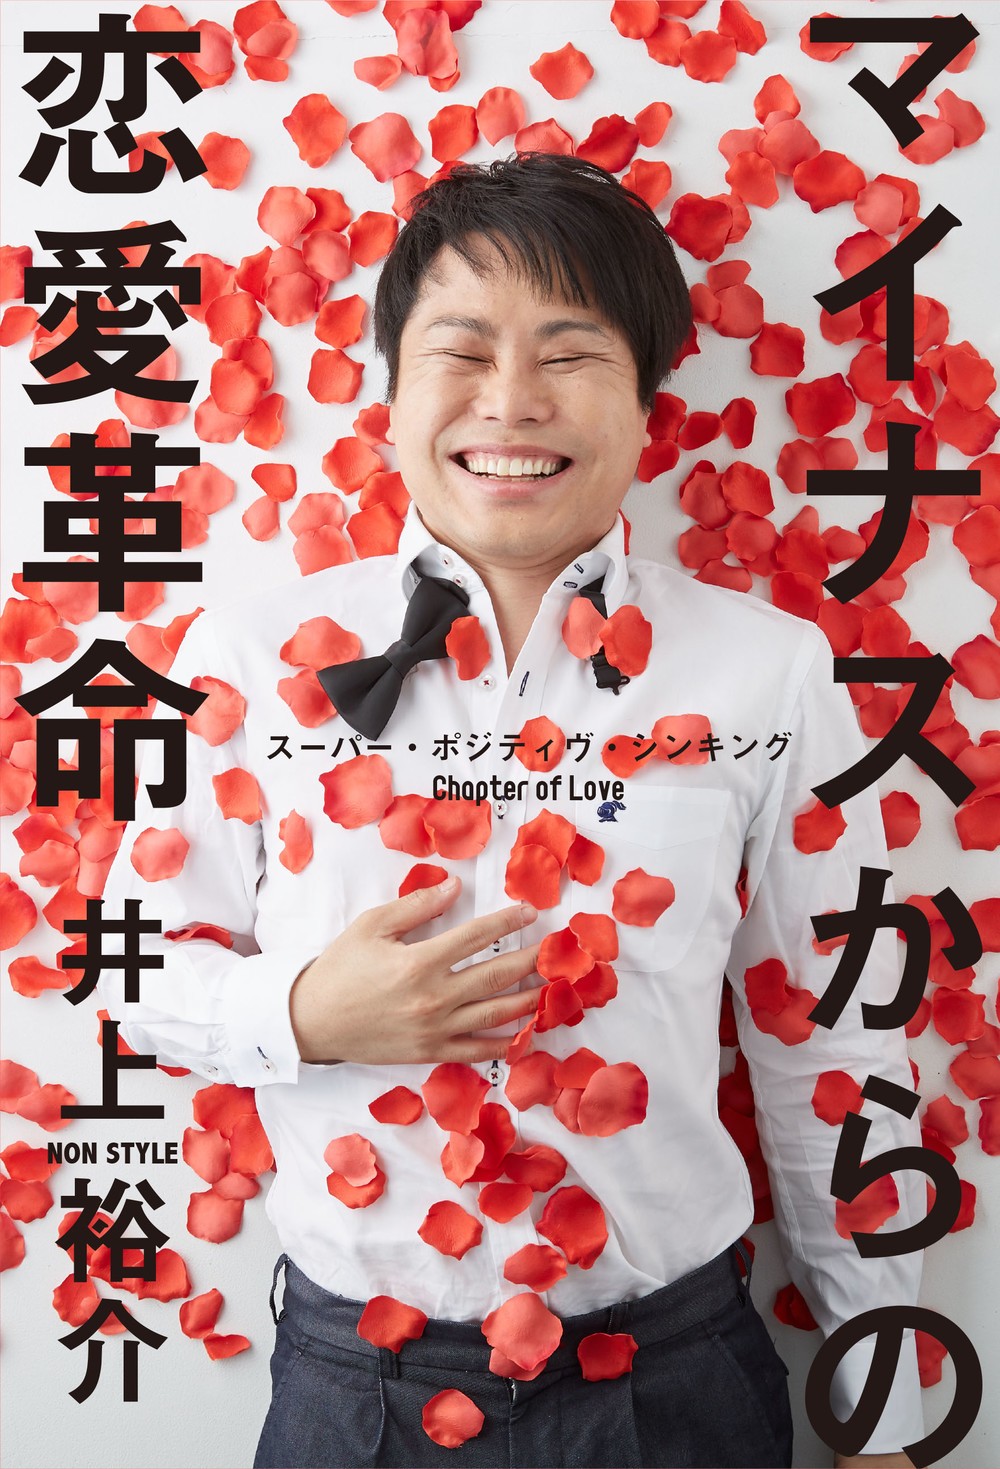 井上さん2冊目の著書は、その名も「マイナスからの恋愛革命」